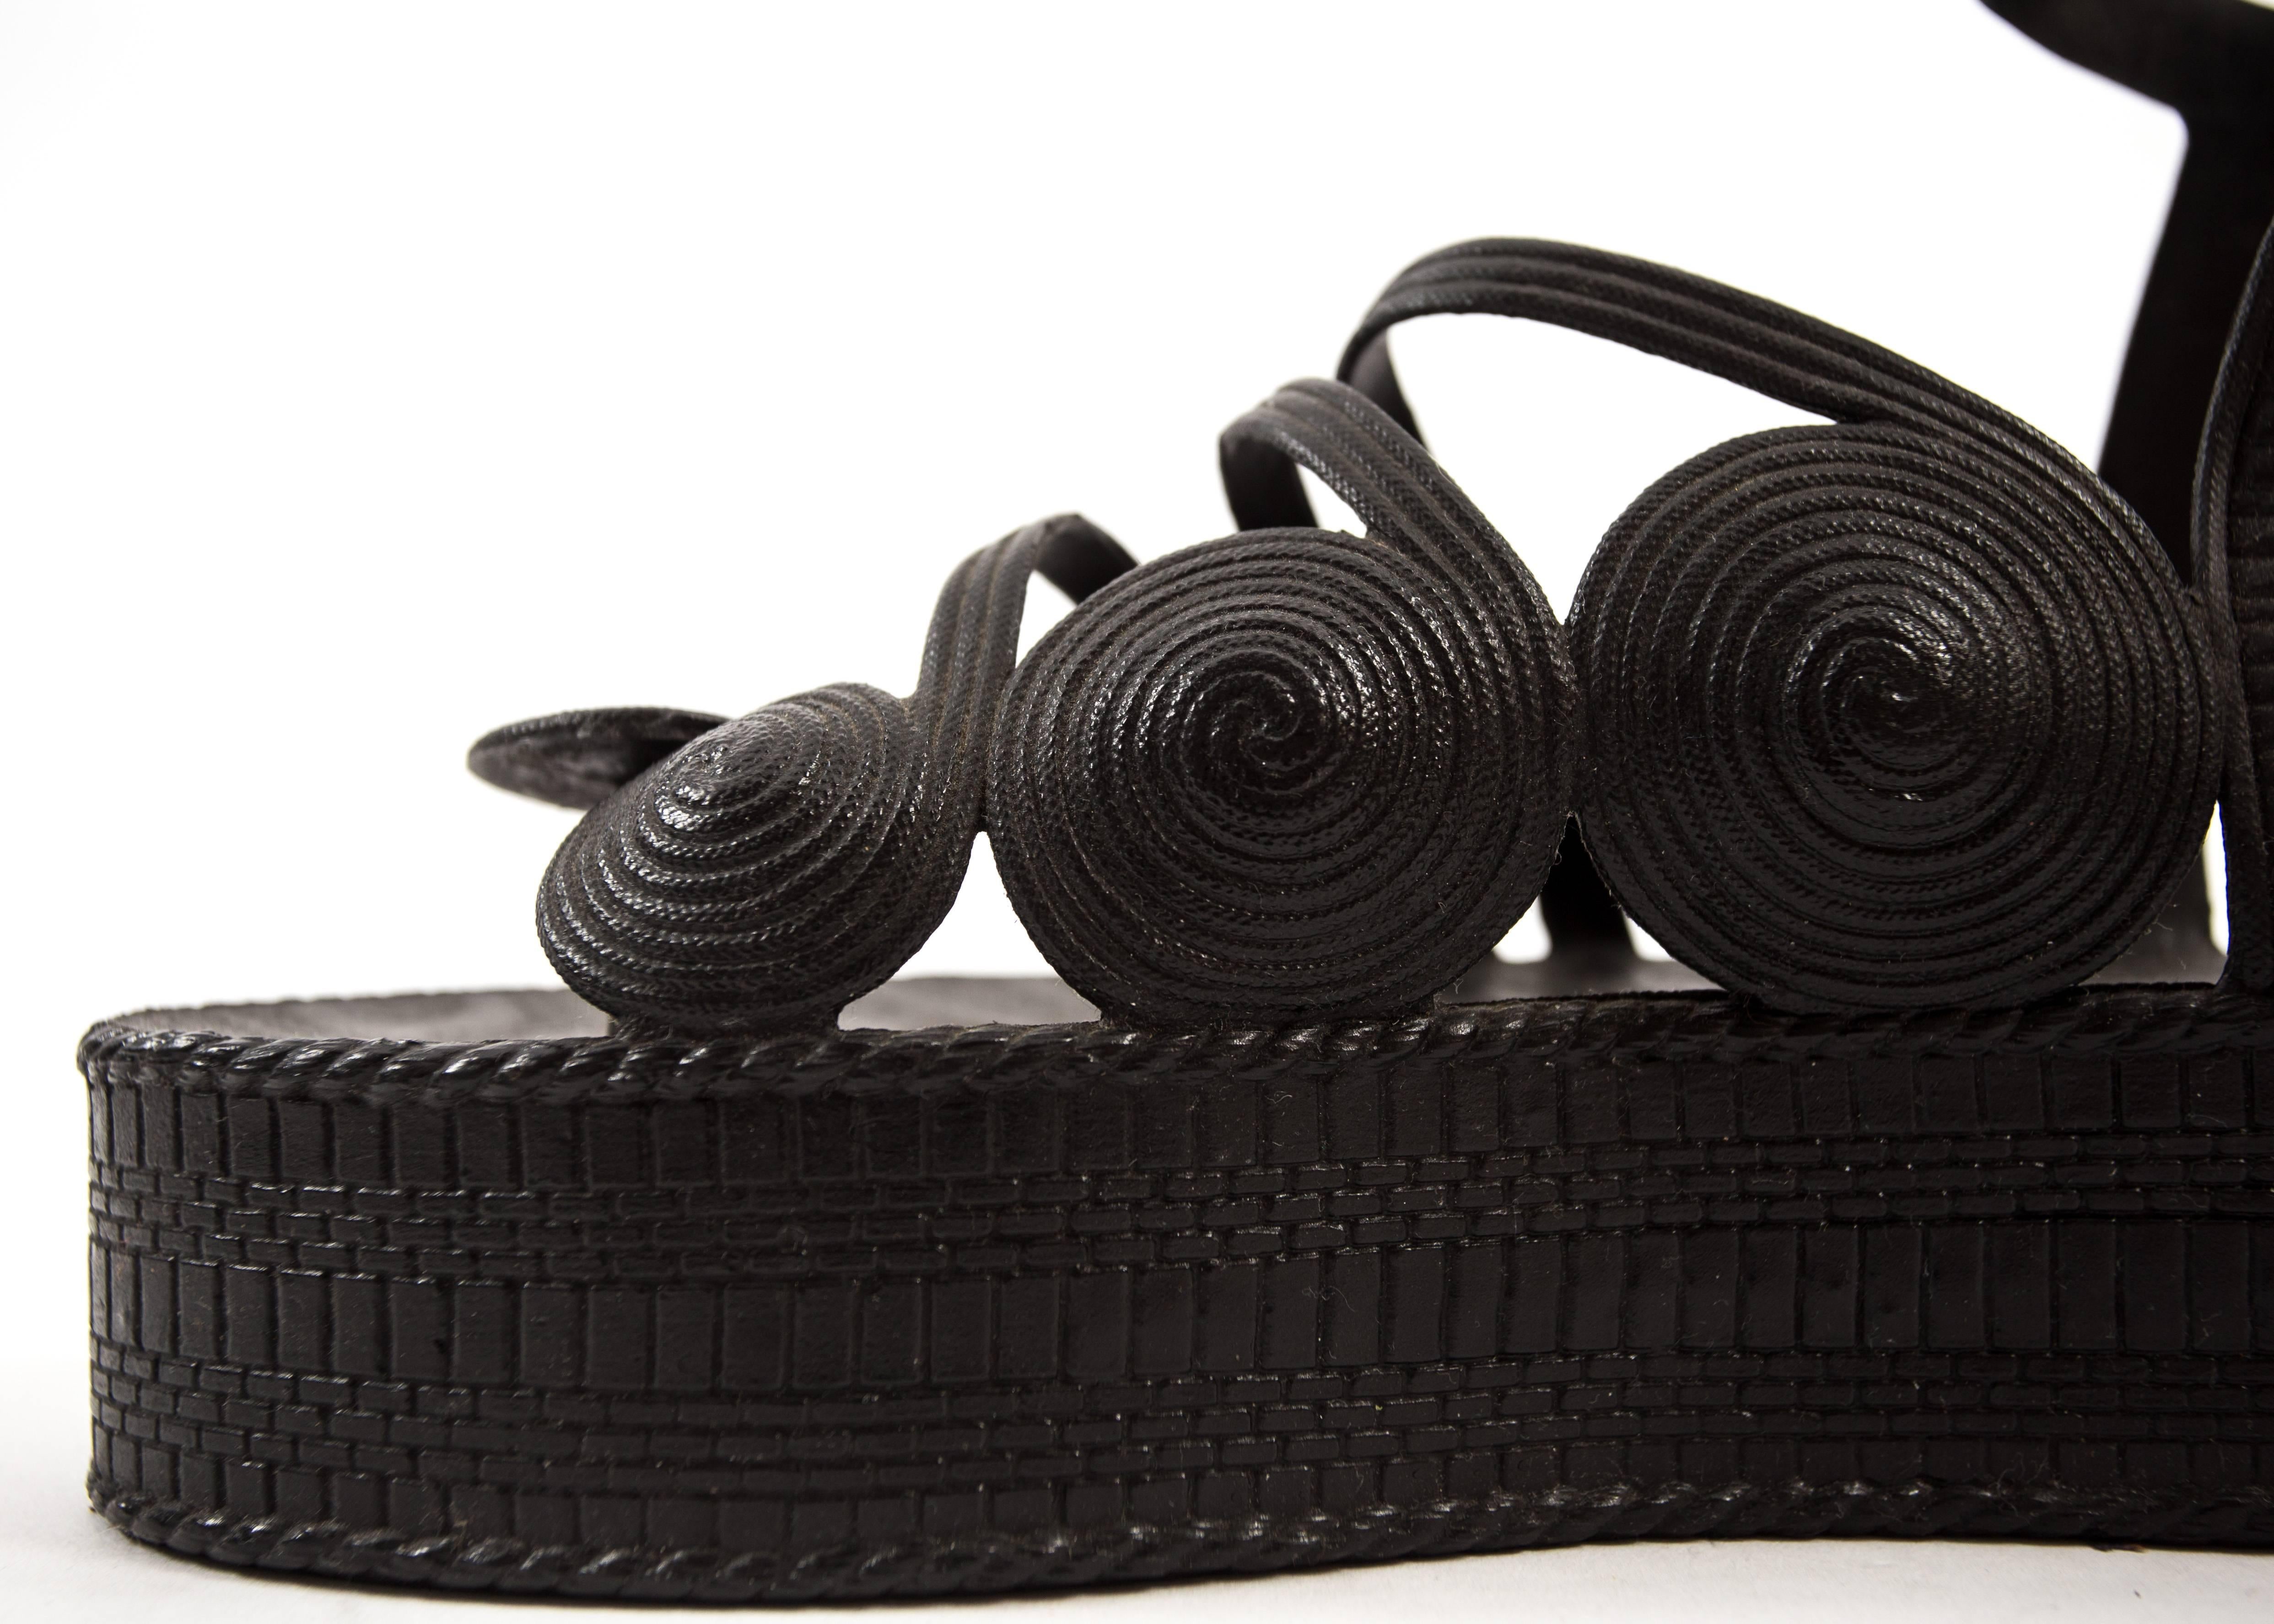 Jean Paul Gaultier Spring-Summer 1985 black rubber platform sandals at ...